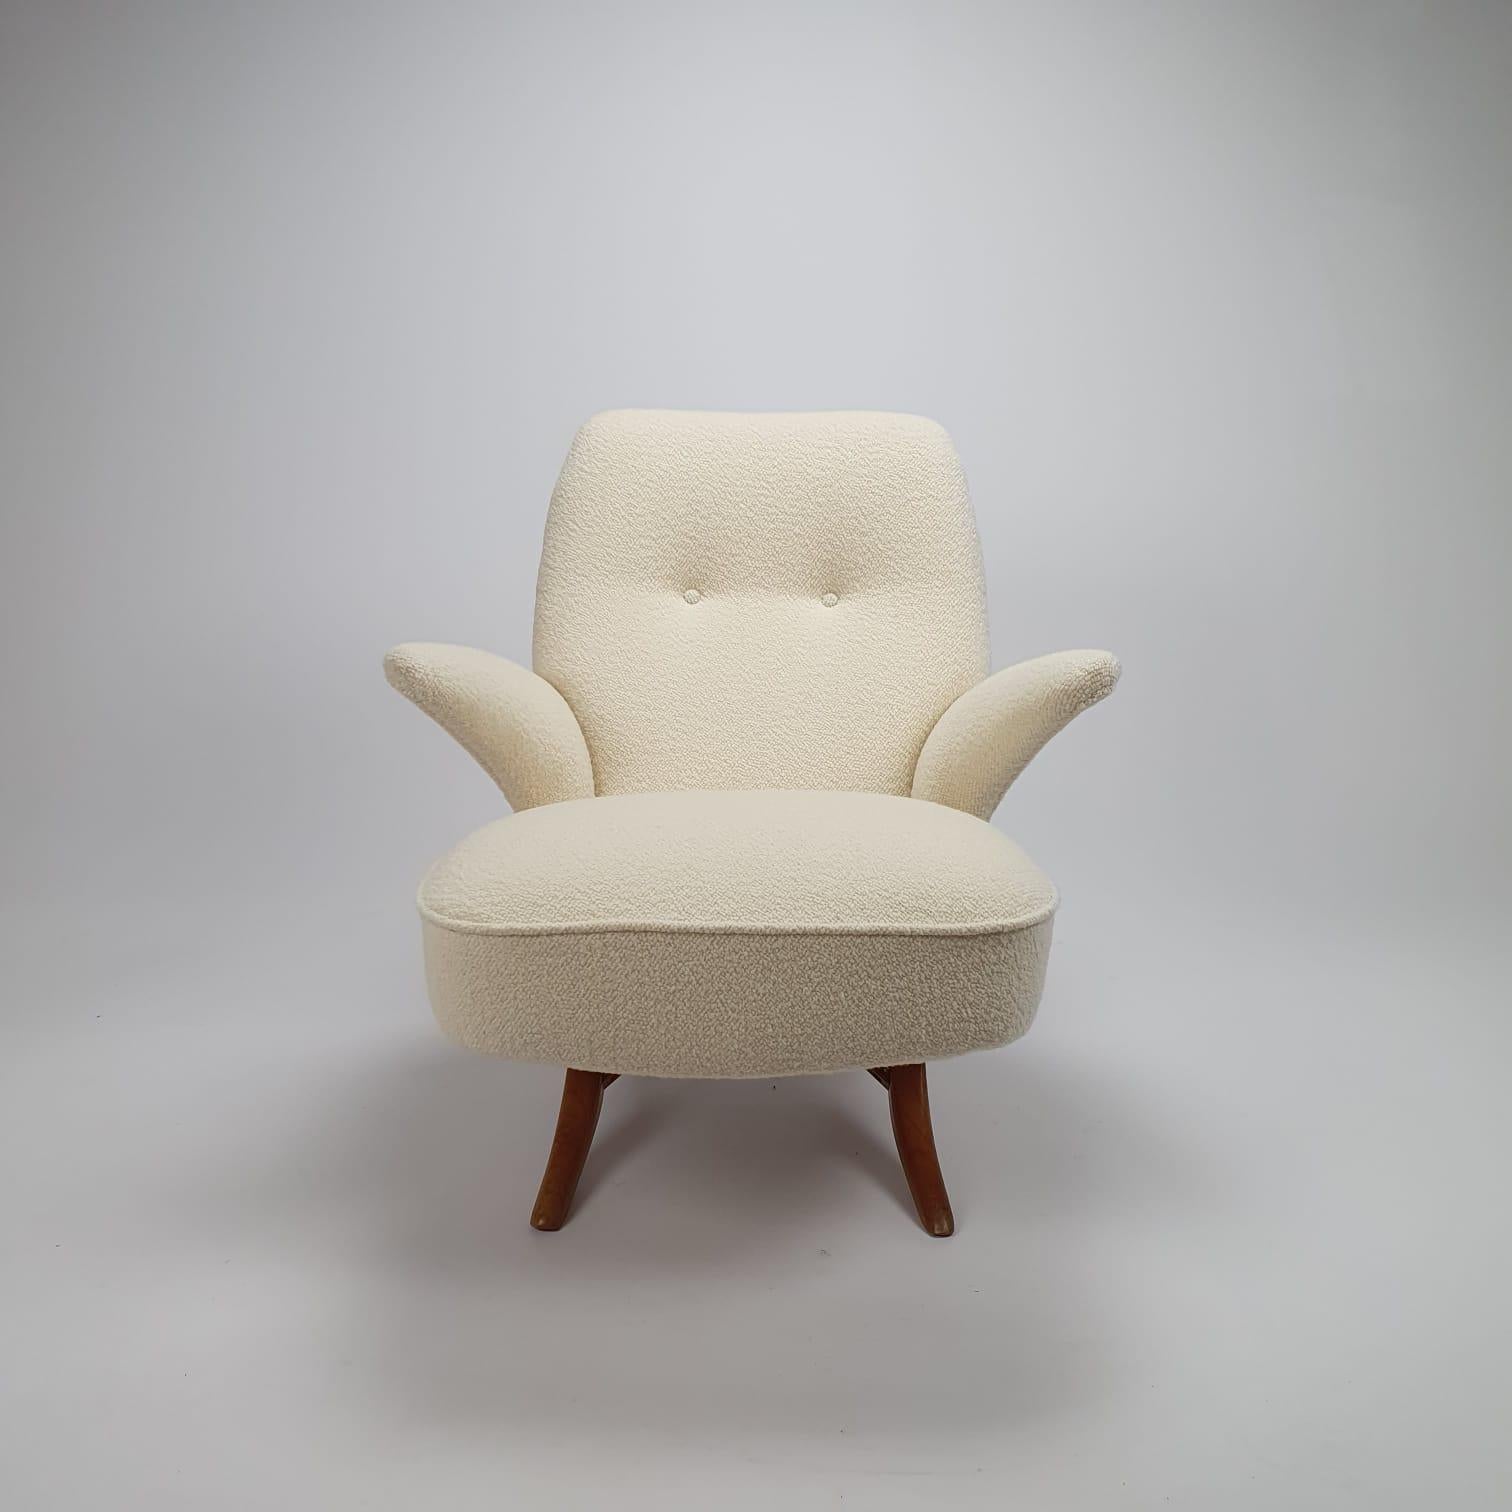 Superbe chaise pingouin de style moderne du milieu du siècle, conçue par Theo Ruth pour Artifort.
Design/One emblématique des années 50.
Le dossier et l'assise sont deux pièces distinctes qui s'assemblent facilement et en font une chaise